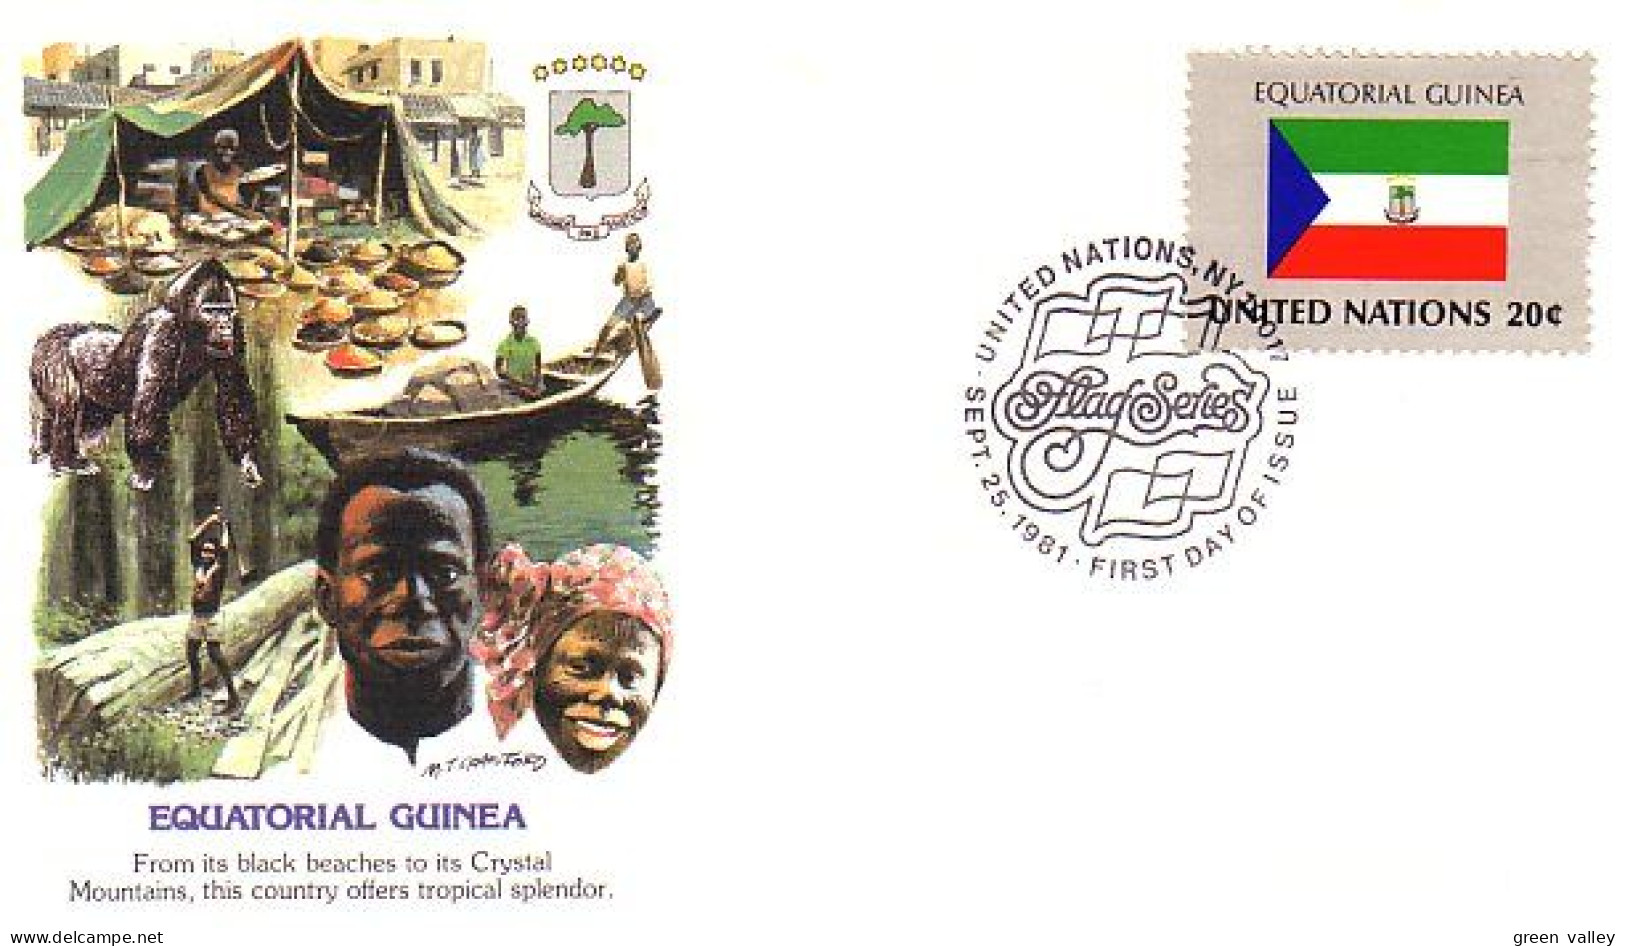 Equatorial Guinea Flag Drapeau Gorillas FDC Cover ( A90 173) - Covers